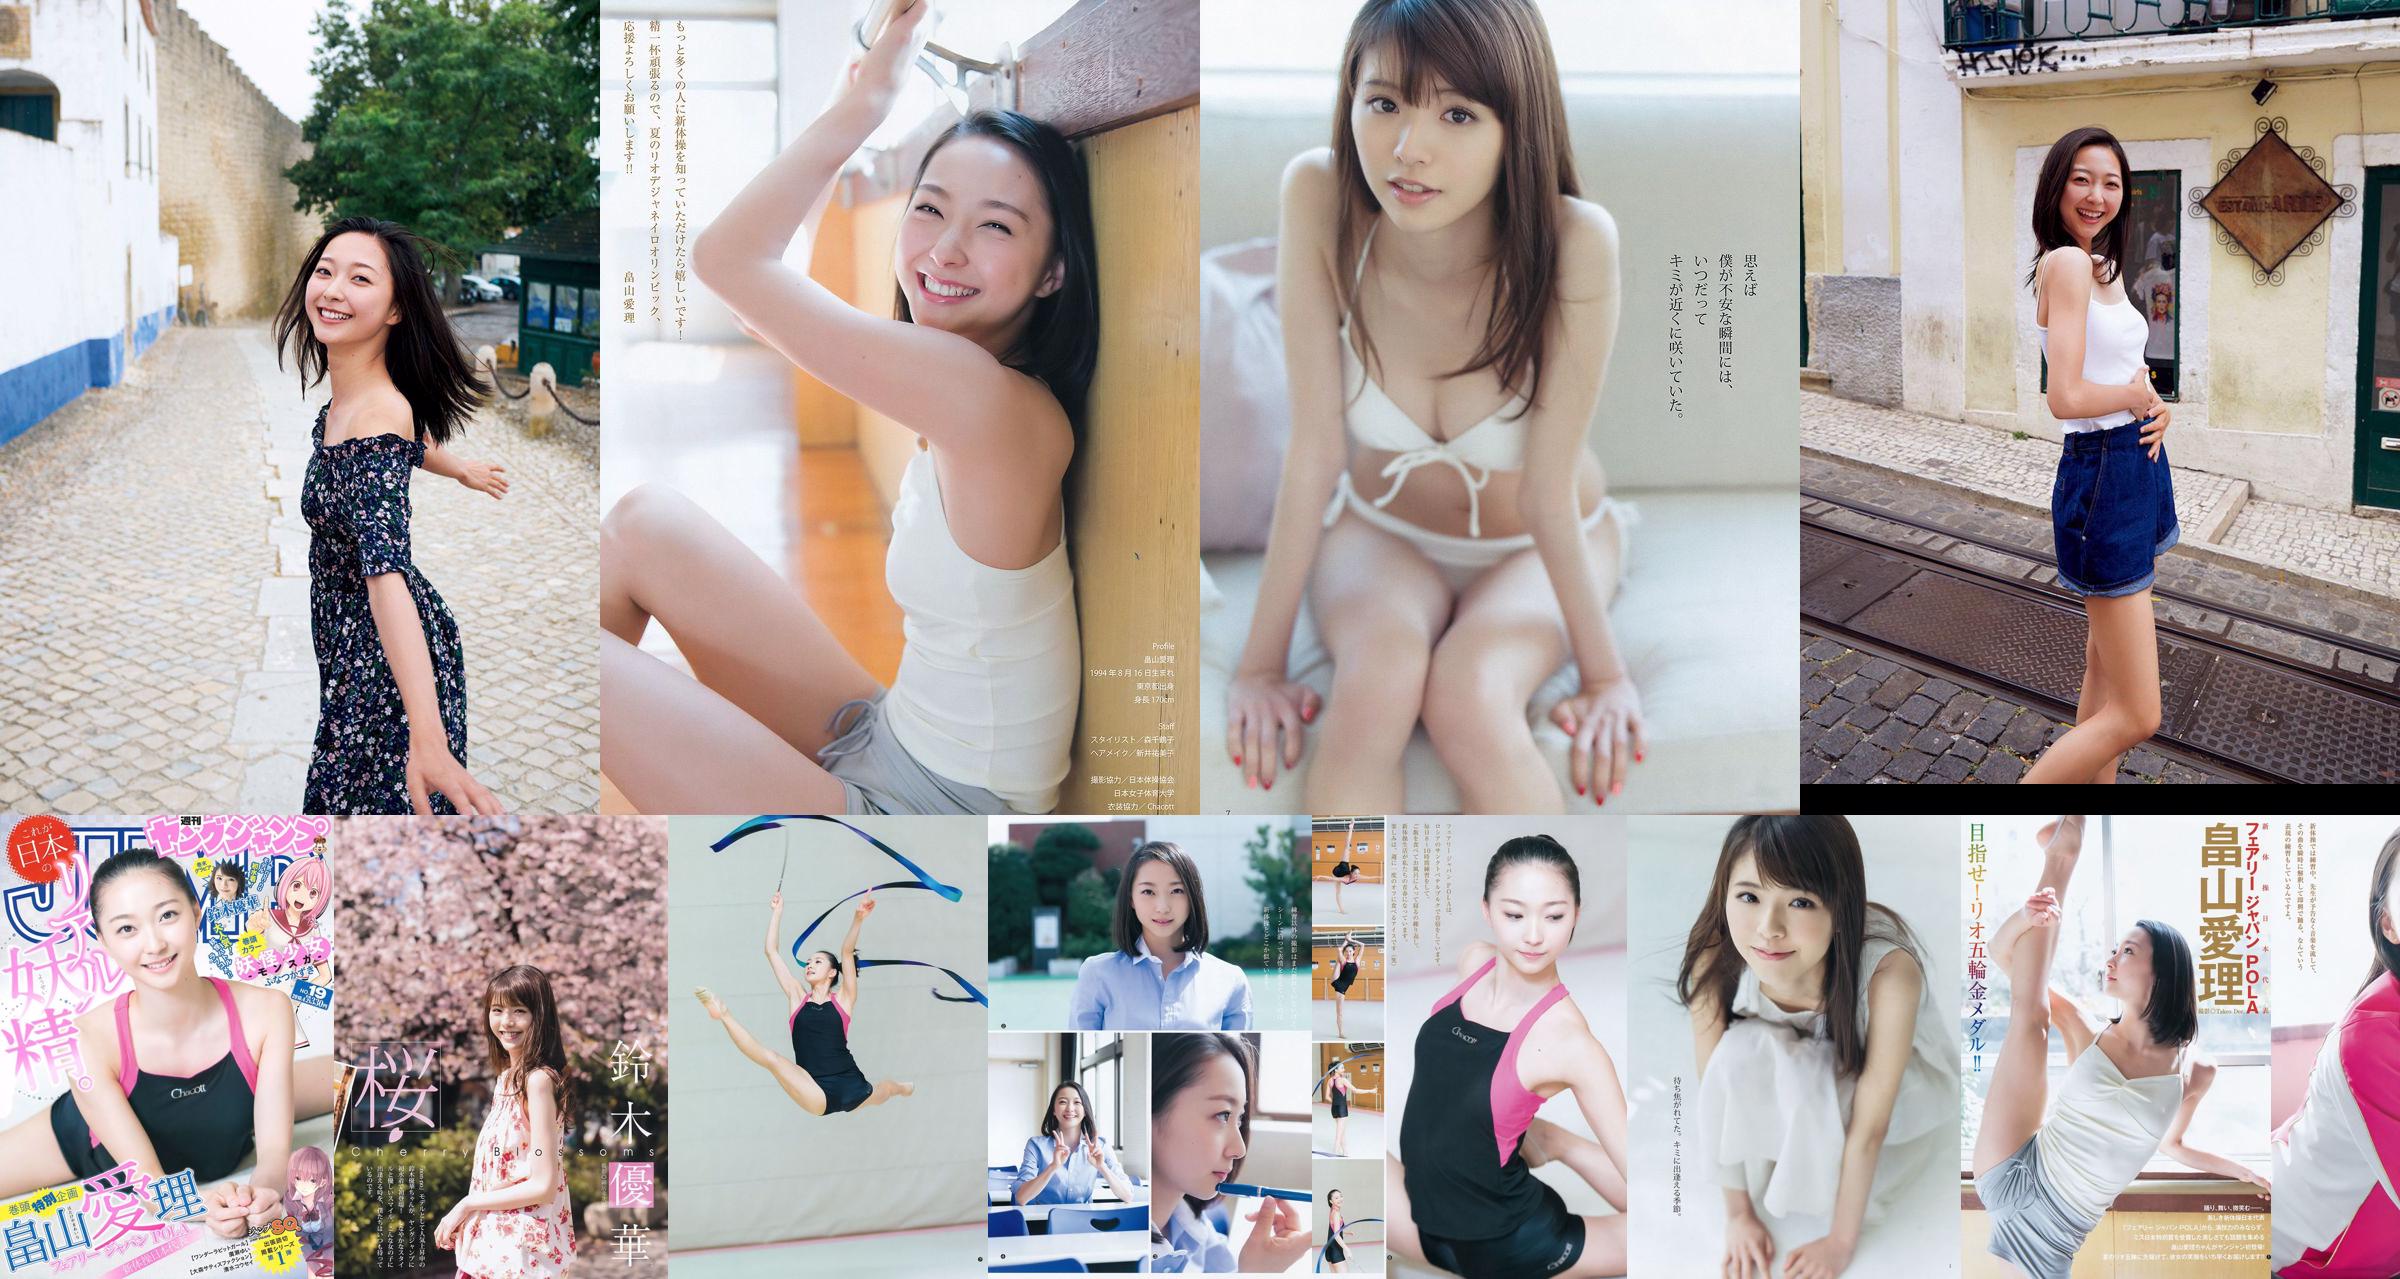 [ENTAME] Mai Shiraishi Nanase Nishino Rena Shimada Yui Takano Ausgabe März 2014 Foto No.bb9a97 Seite 1